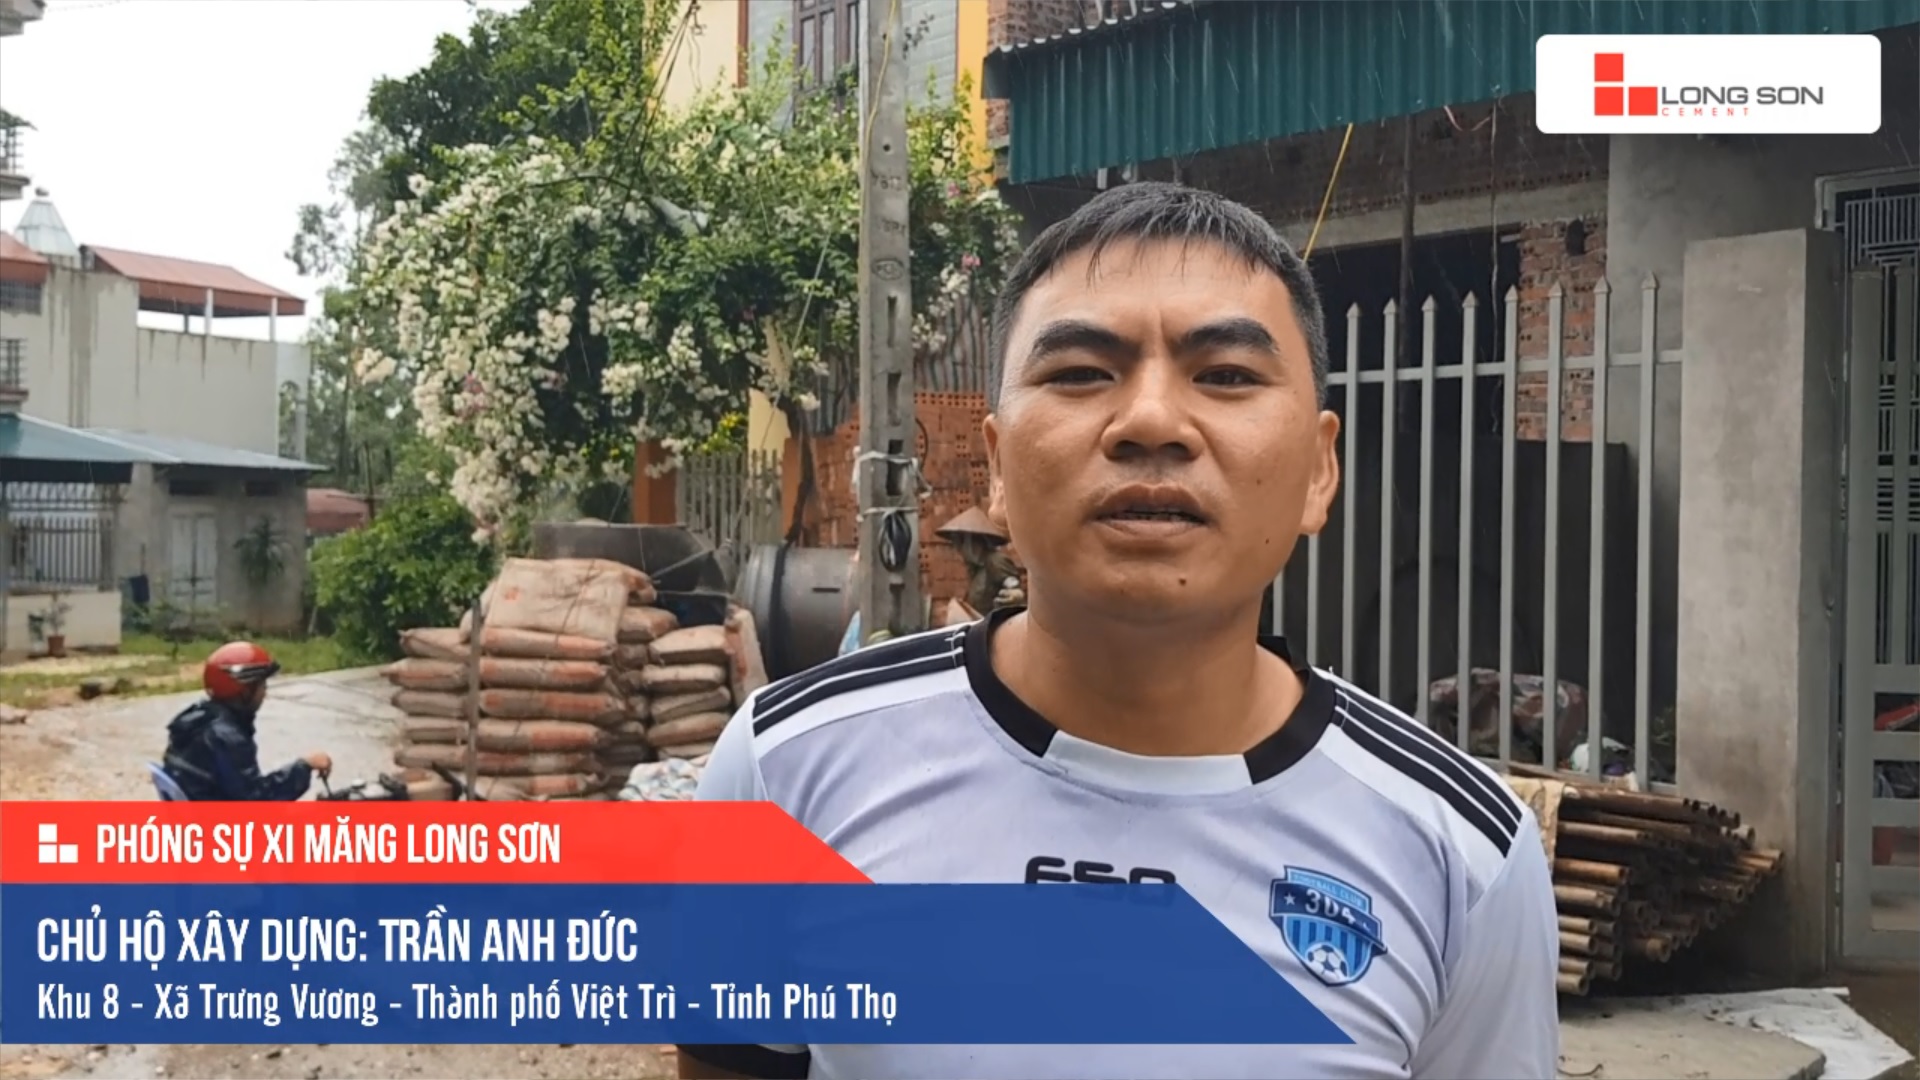 Phóng sự công trình sử dụng Xi măng Long Sơn tại Phú Thọ 04.07.2019